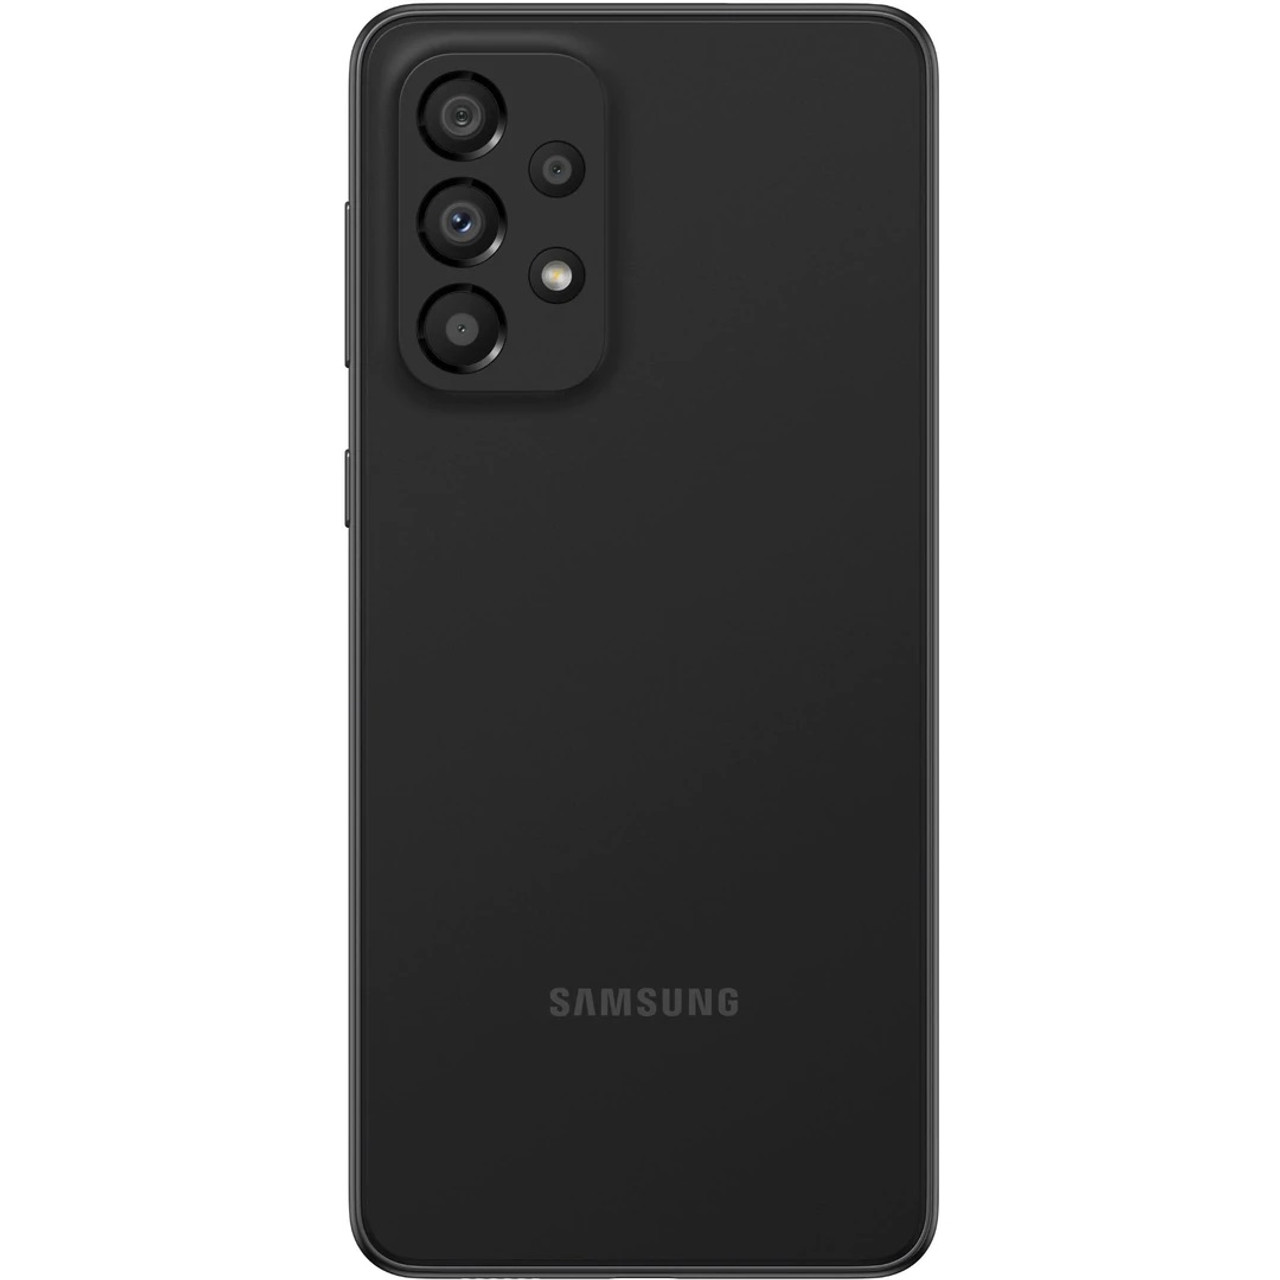 SAMSUNG Galaxy A33 5G (RAM 6GB, 128GB) 6.4 48MP Camera Dual-Sim Unlocked  Phone